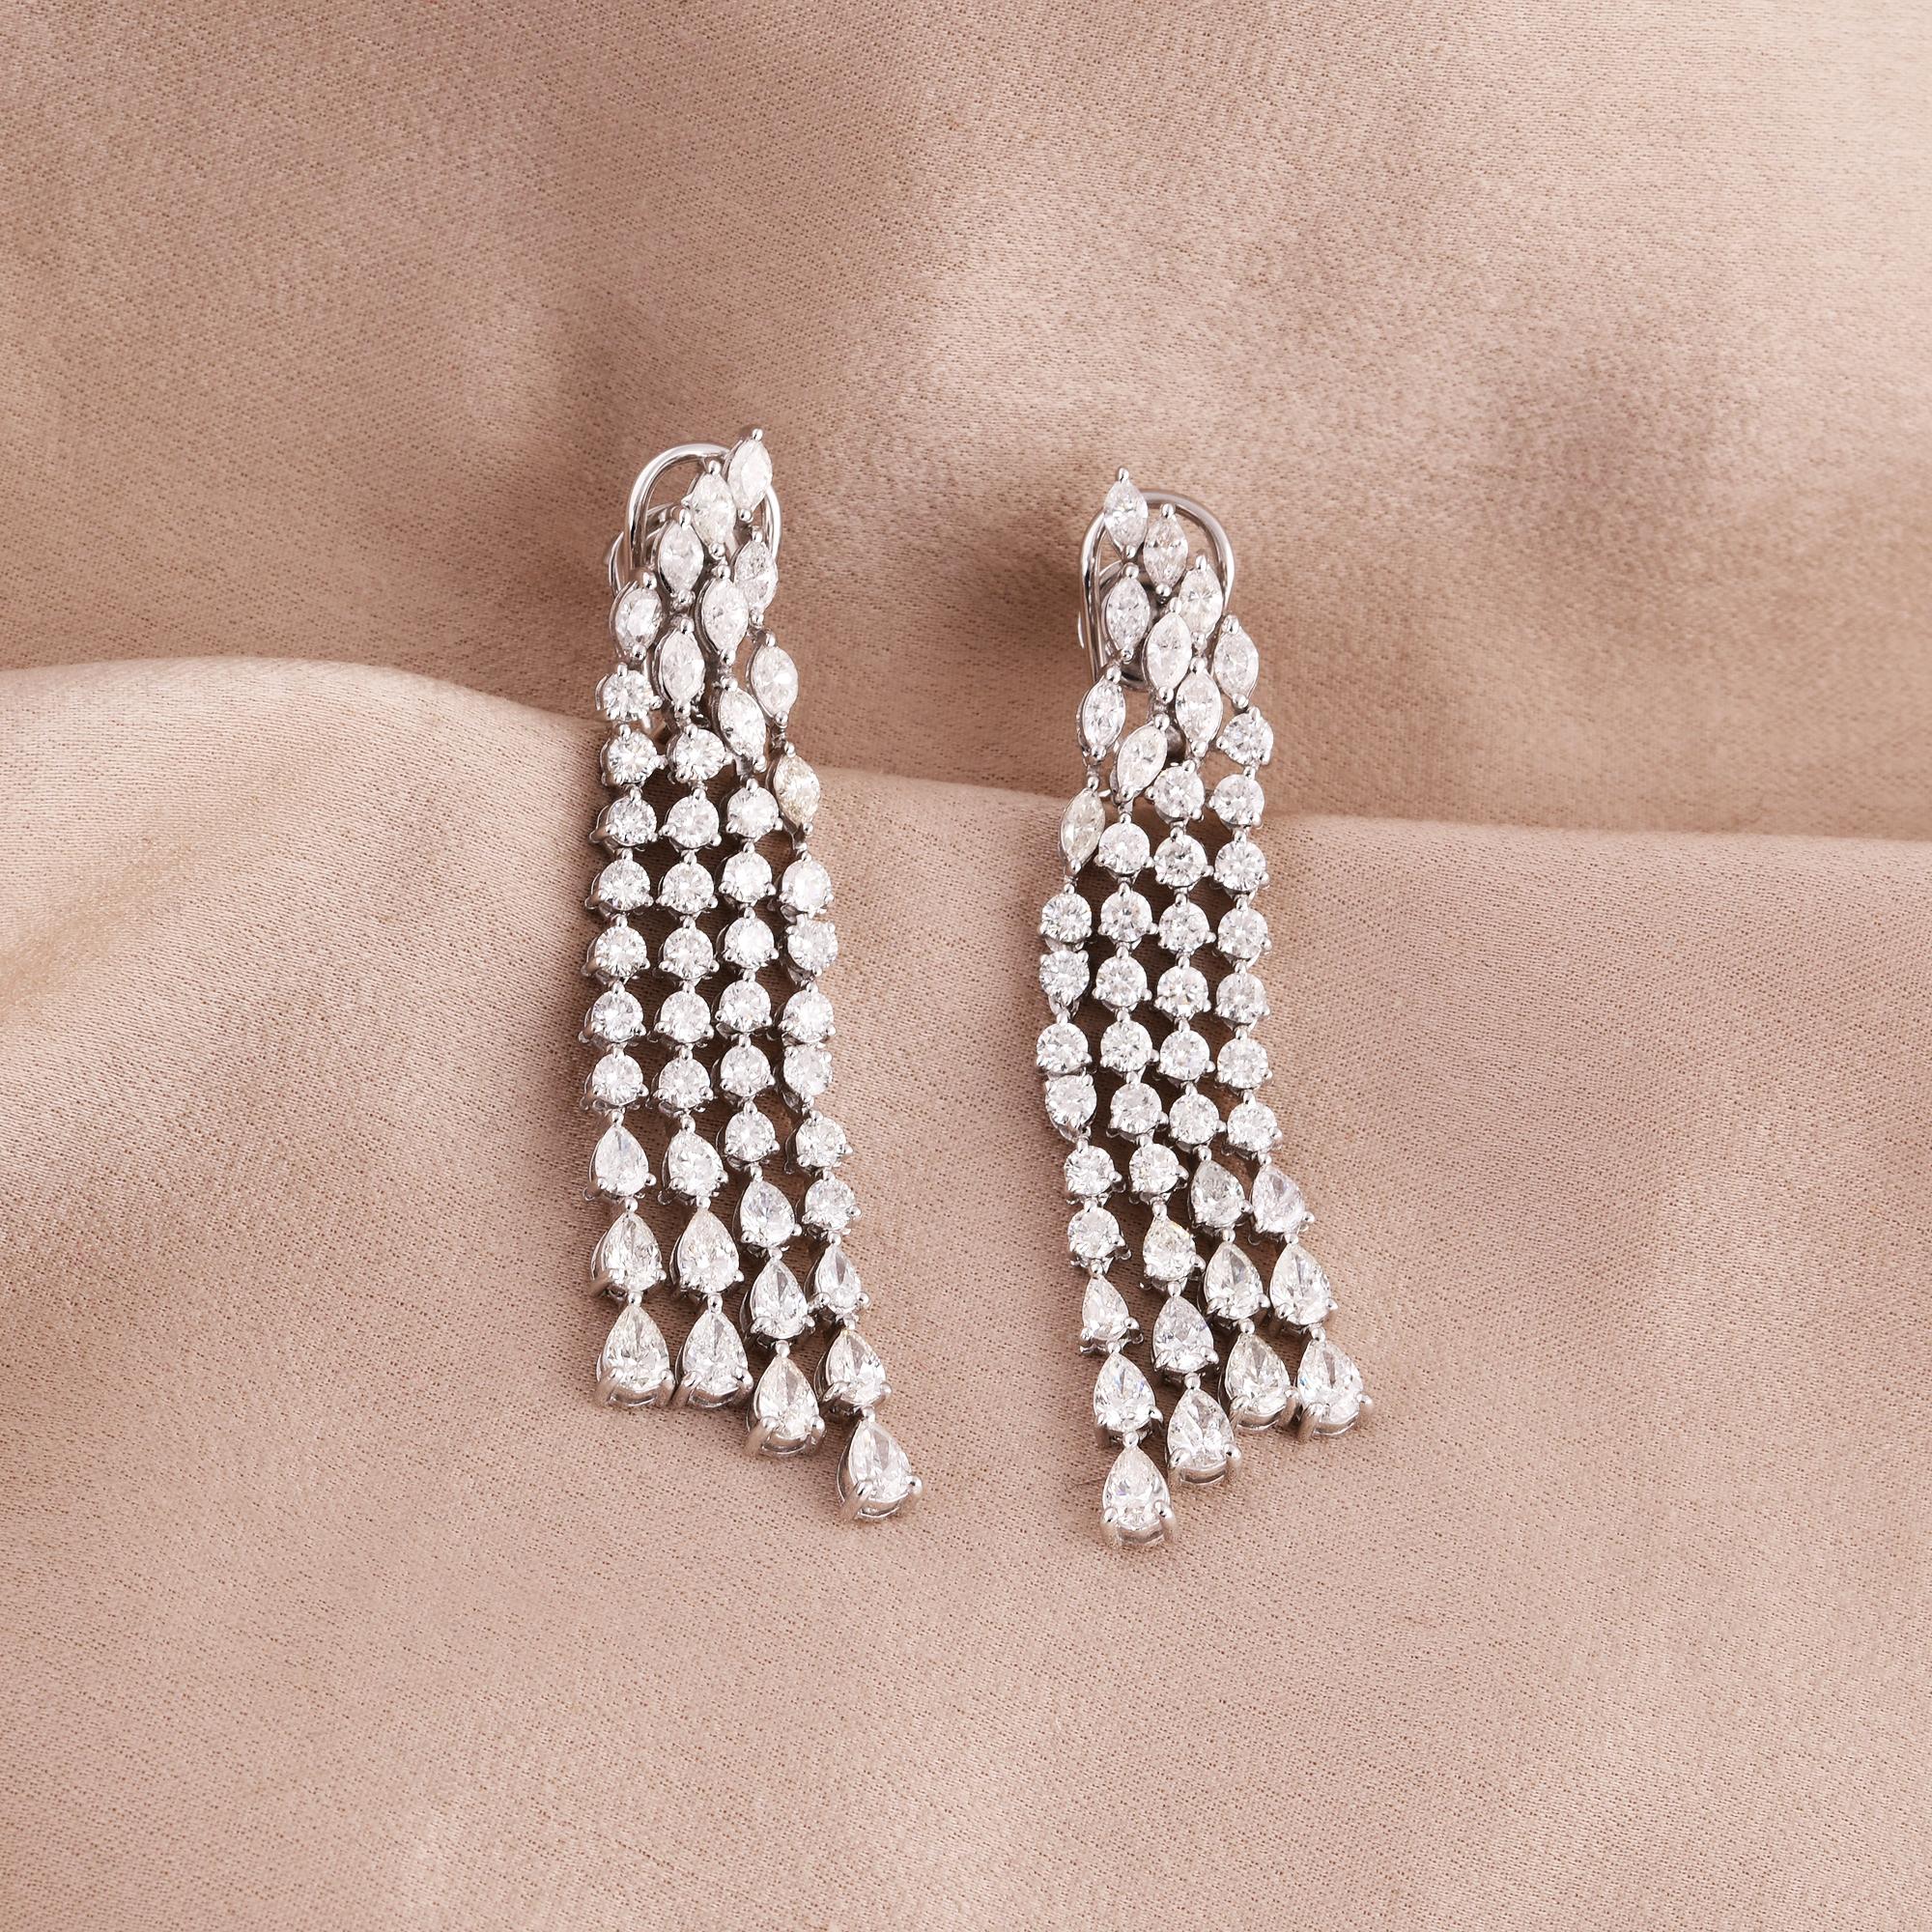 Pear Cut 7.28 Carat Round Pear Diamond Chandelier Earrings 18 Karat White Gold Jewelry For Sale